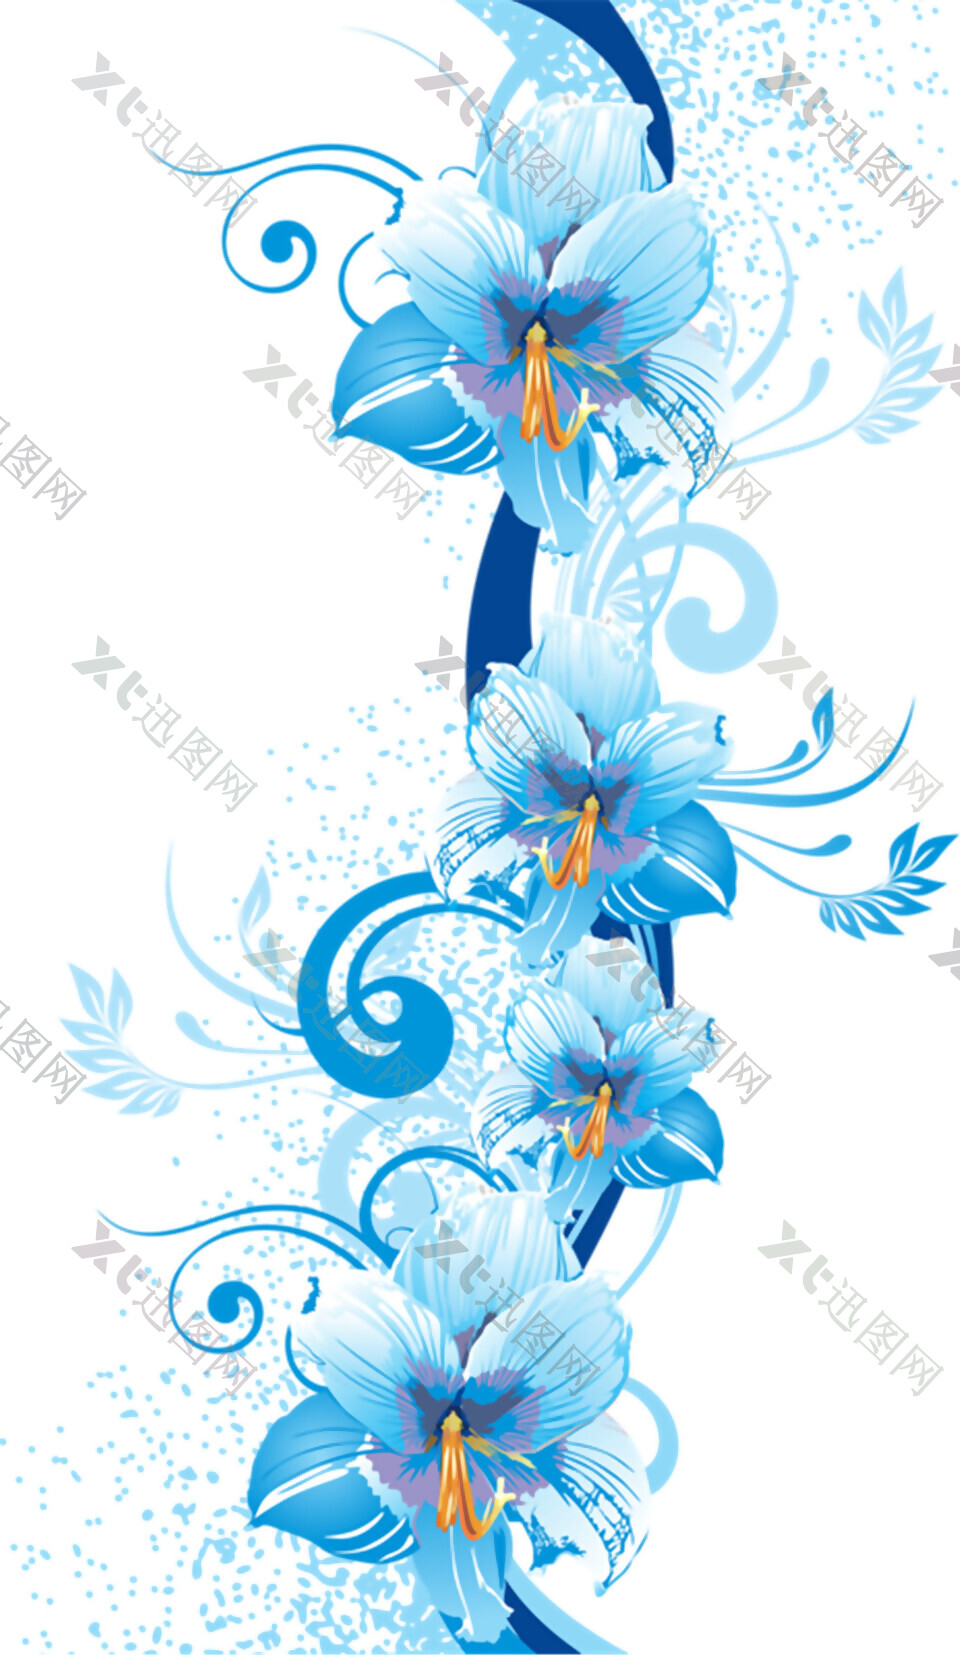 精美蓝色花朵元素素材图片